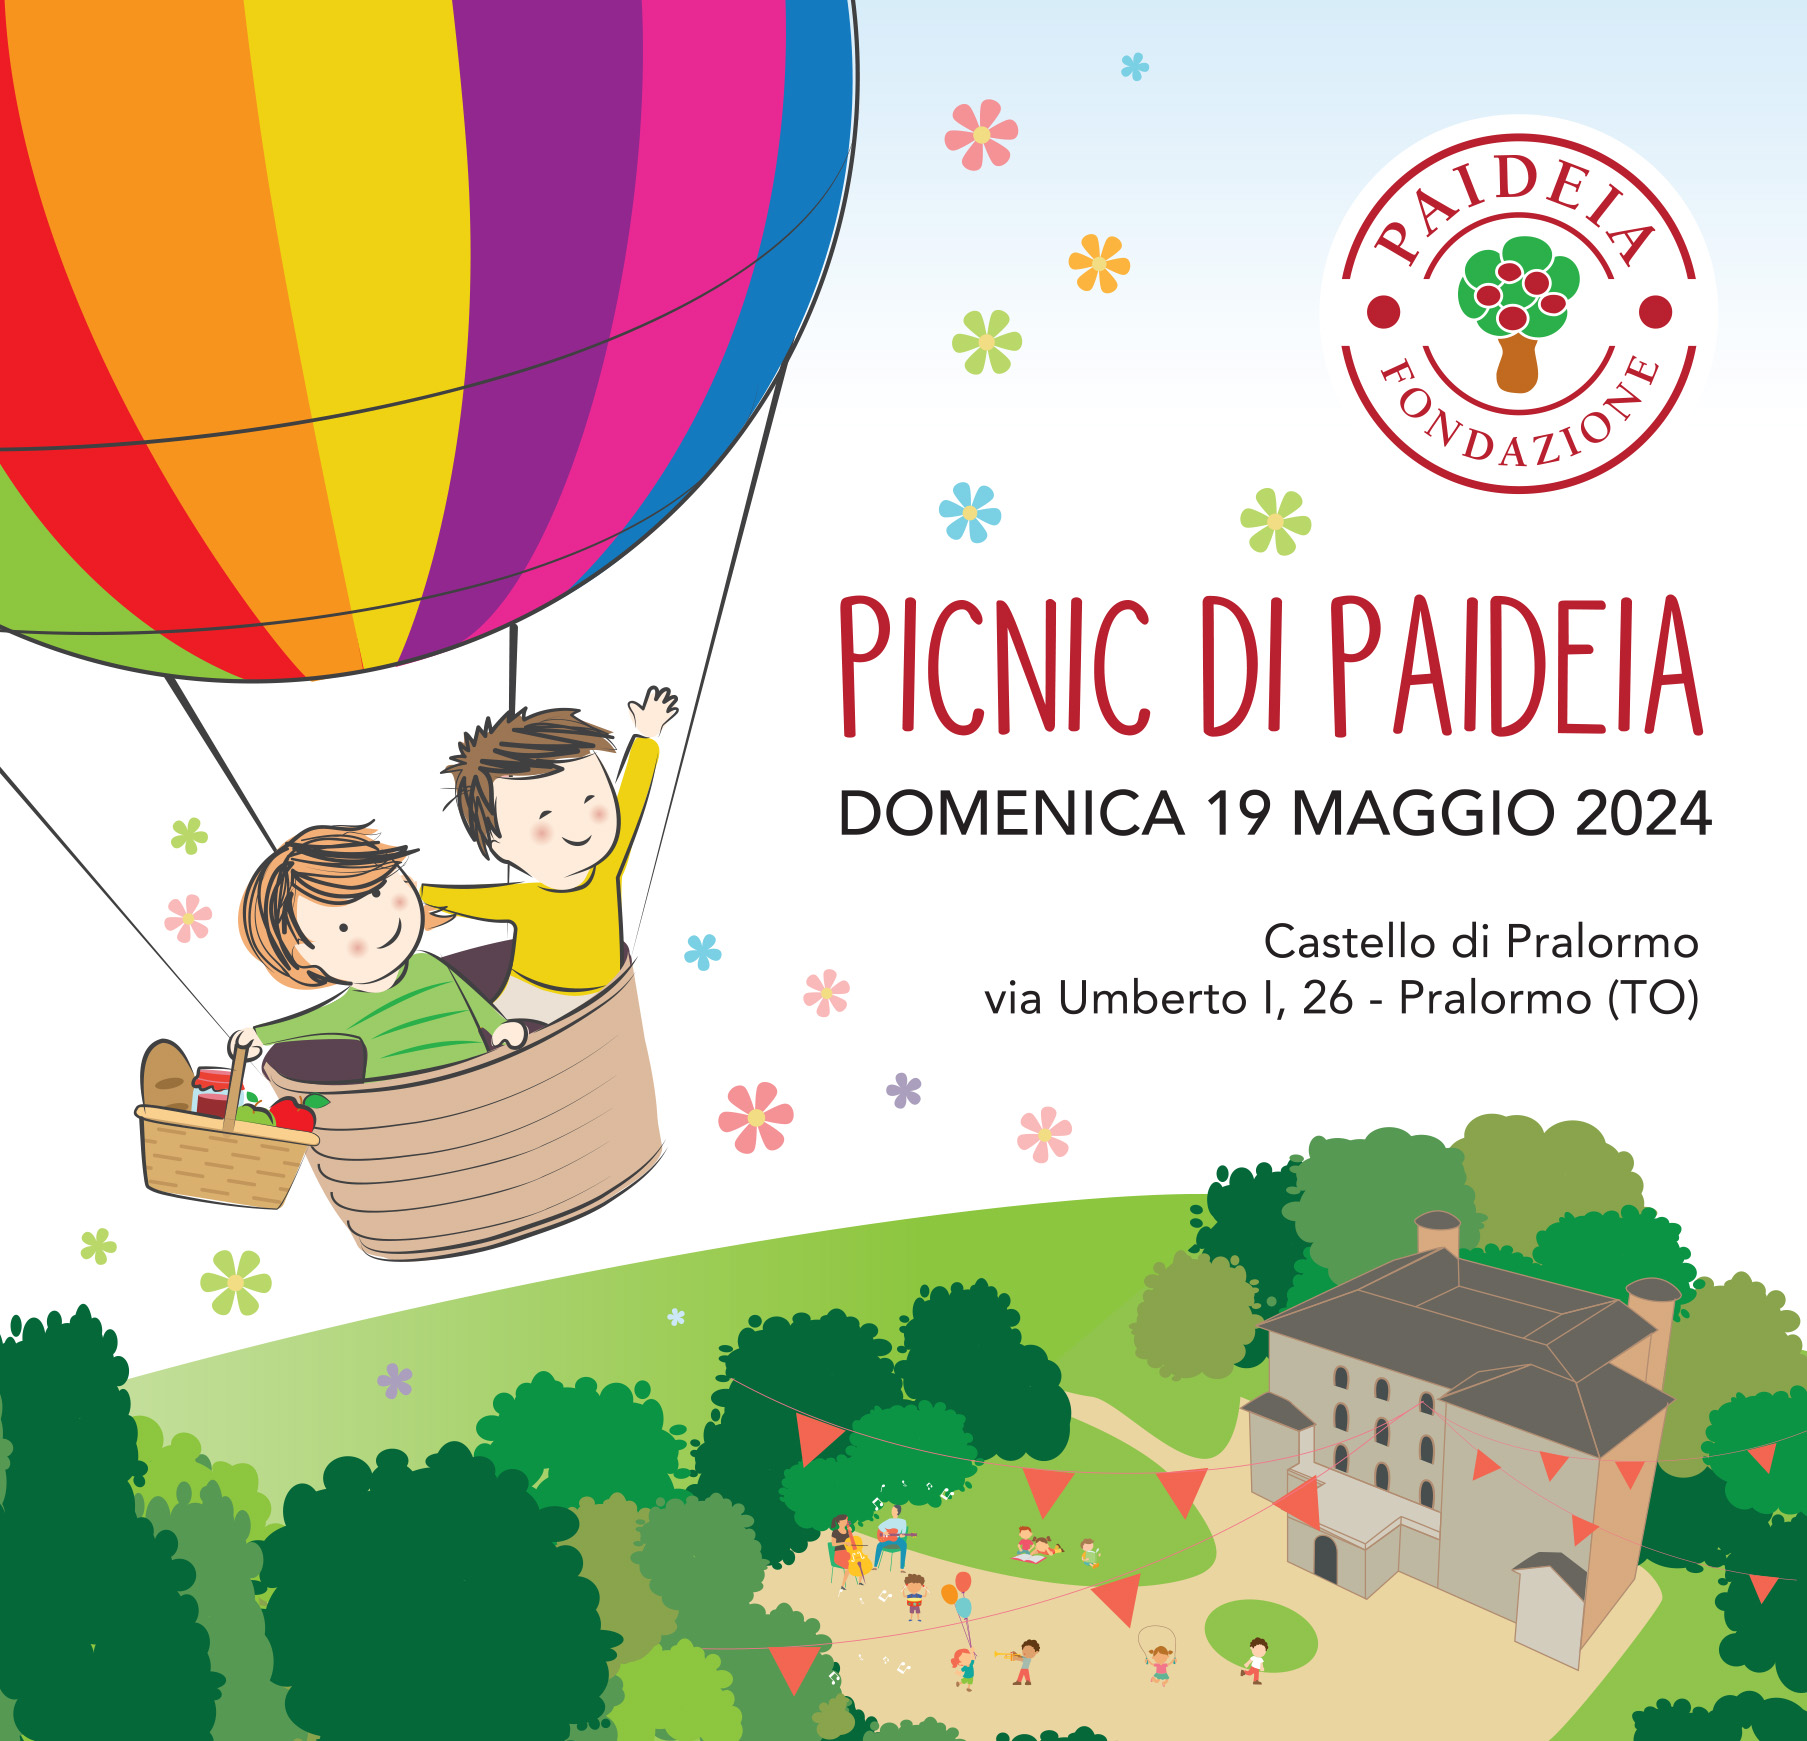 Domenica 19 maggio ti aspettiamo a Pralormo per il Picnic di Paideia!